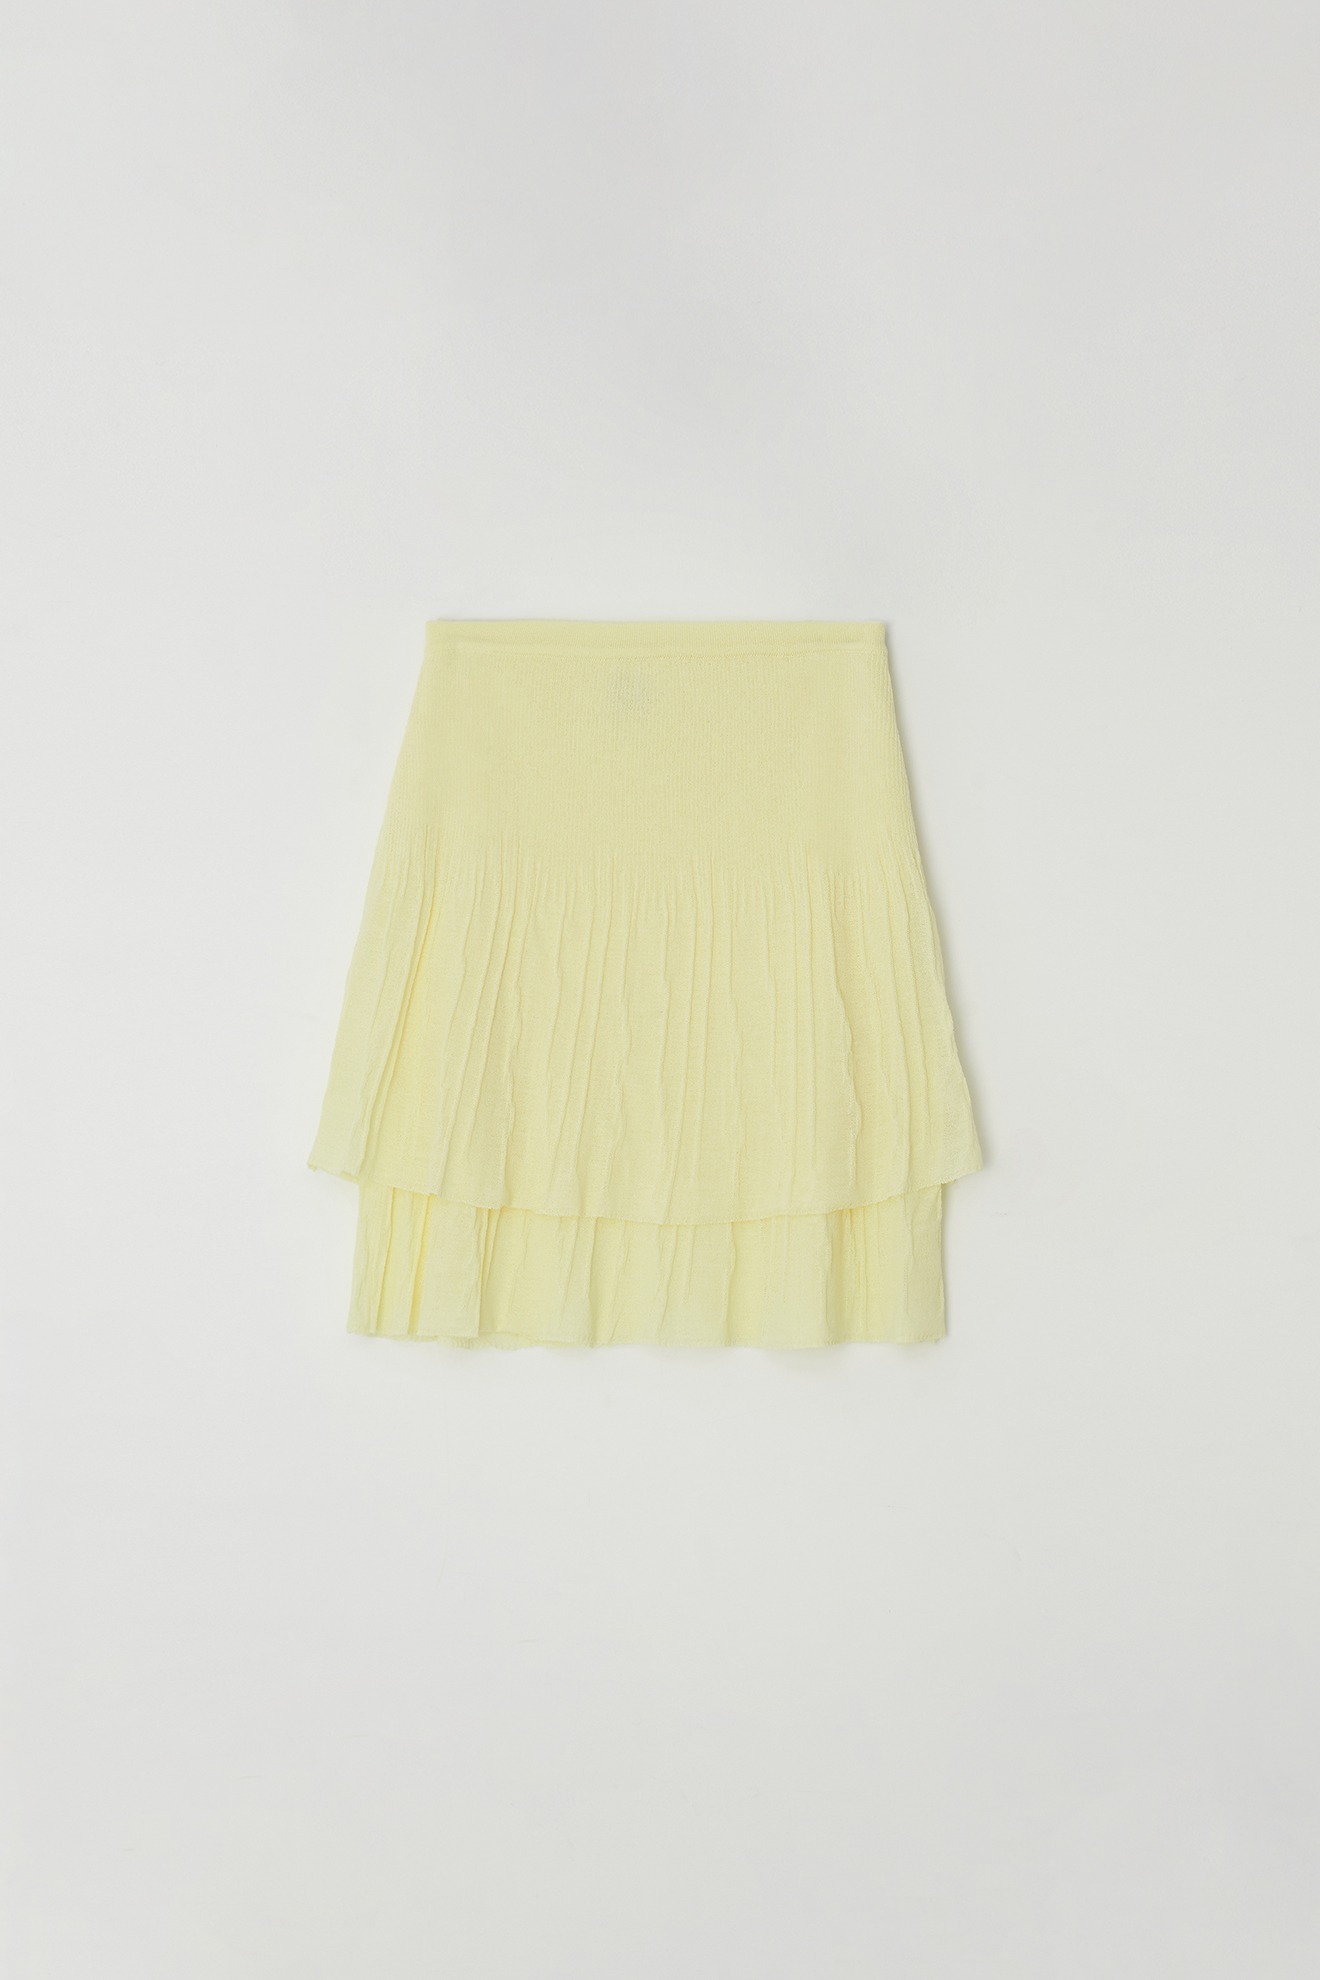 Flare Skirt (yellow)